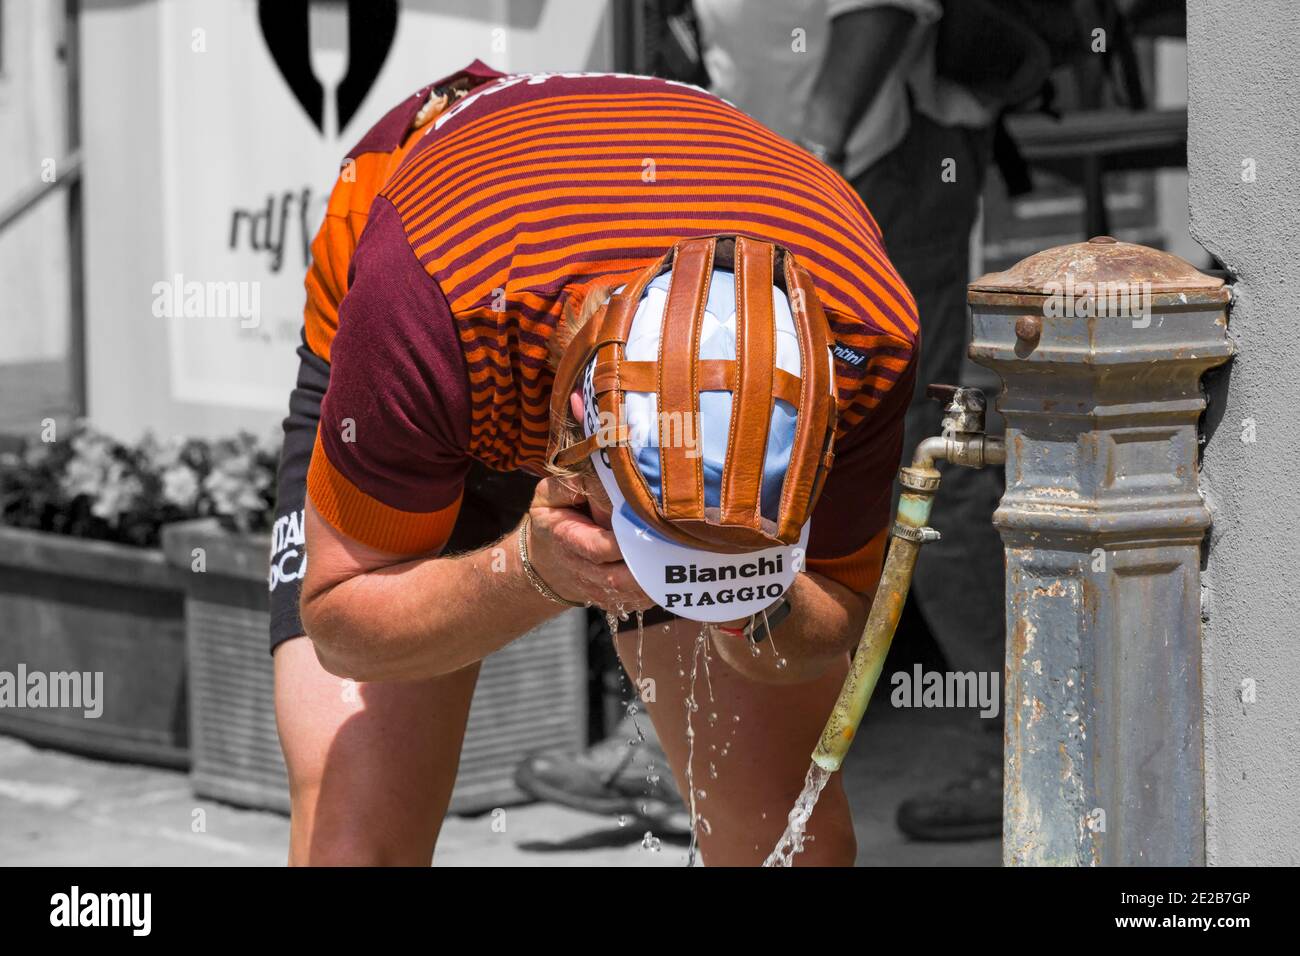 Sosta di ristoro a Montisi per i ciclisti che partecipano all'Eroica Montalcino, Siena, Toscana, Italia a maggio - ciclista con acqua dal rubinetto Foto Stock